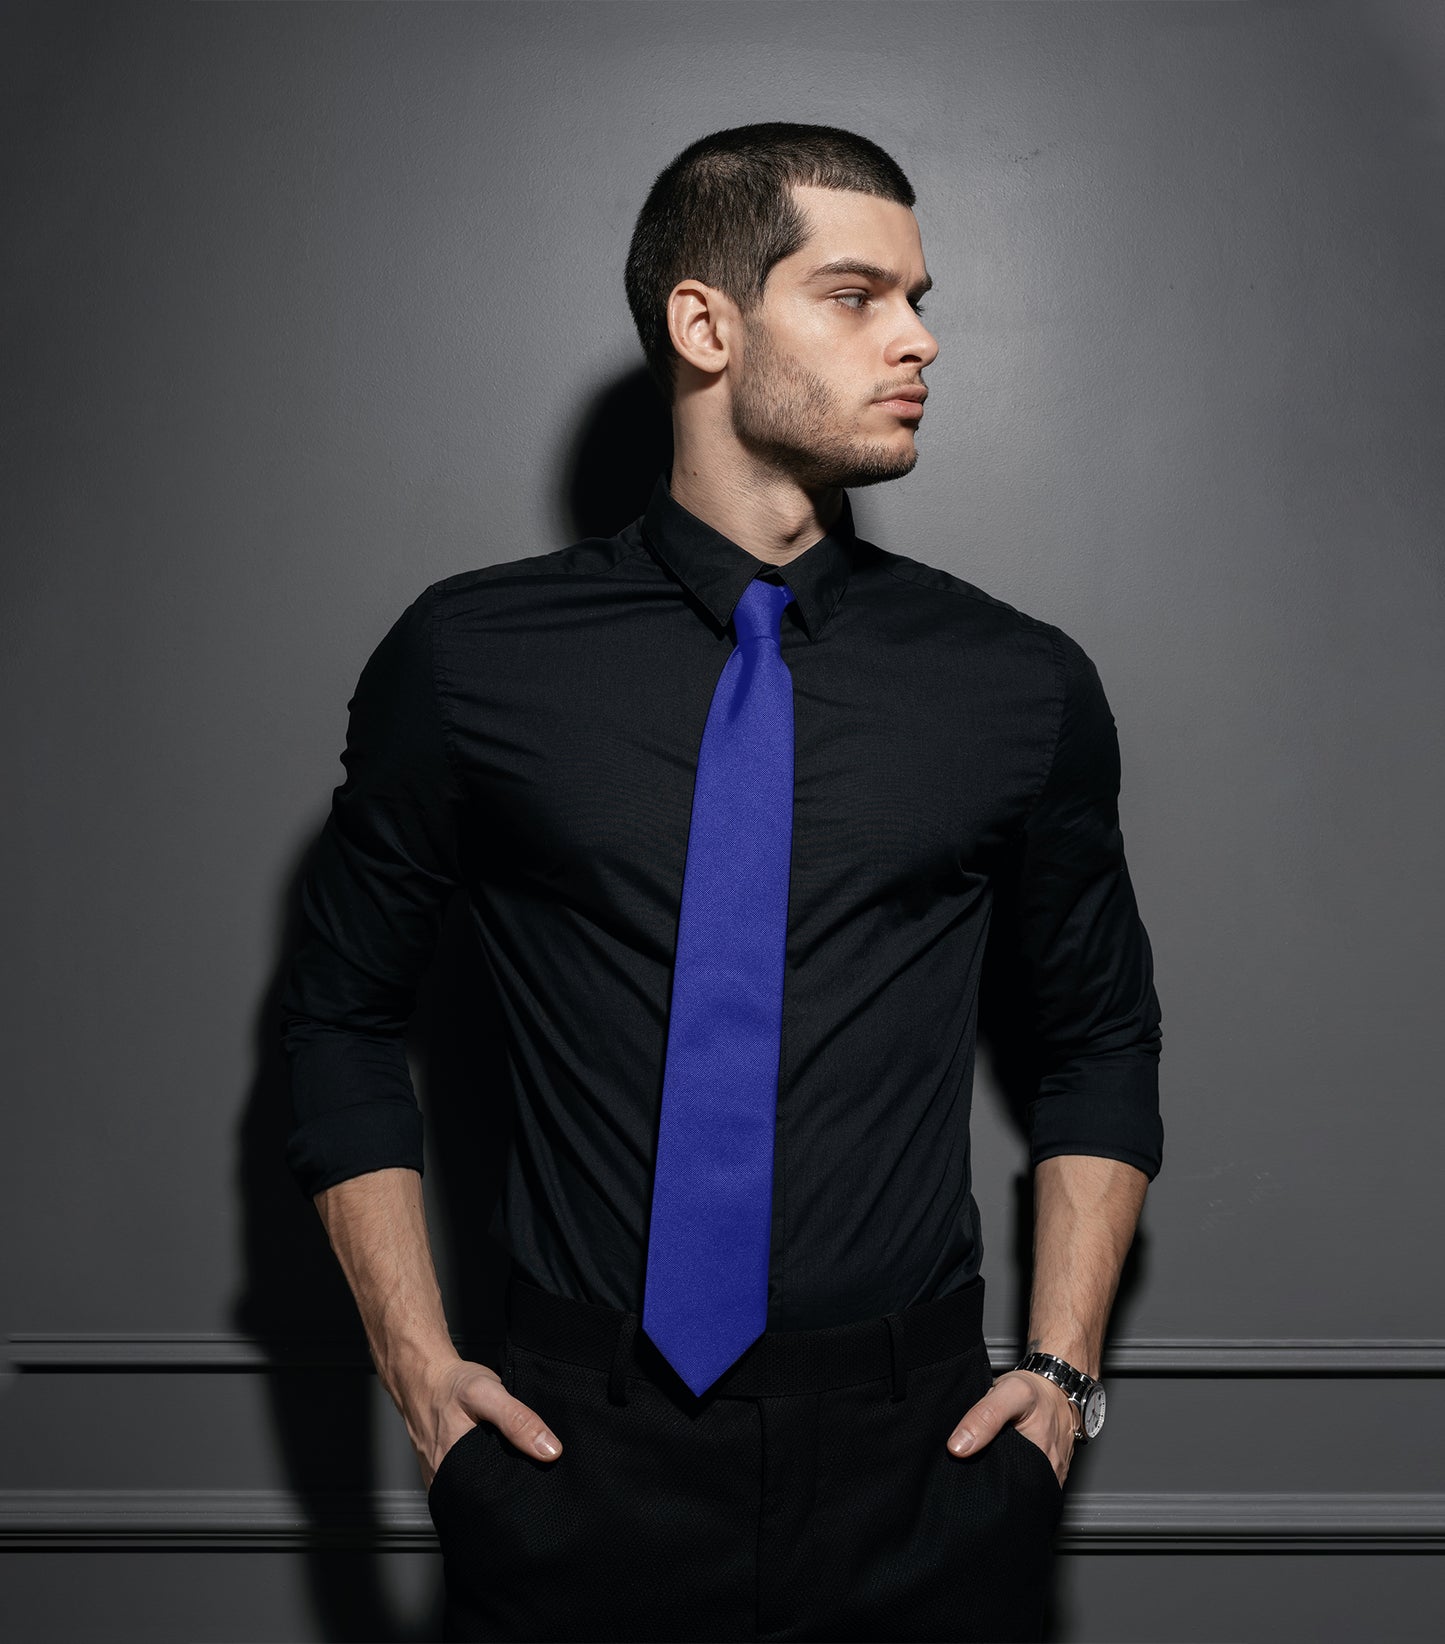 Blue Satin tie | high-quality necktie